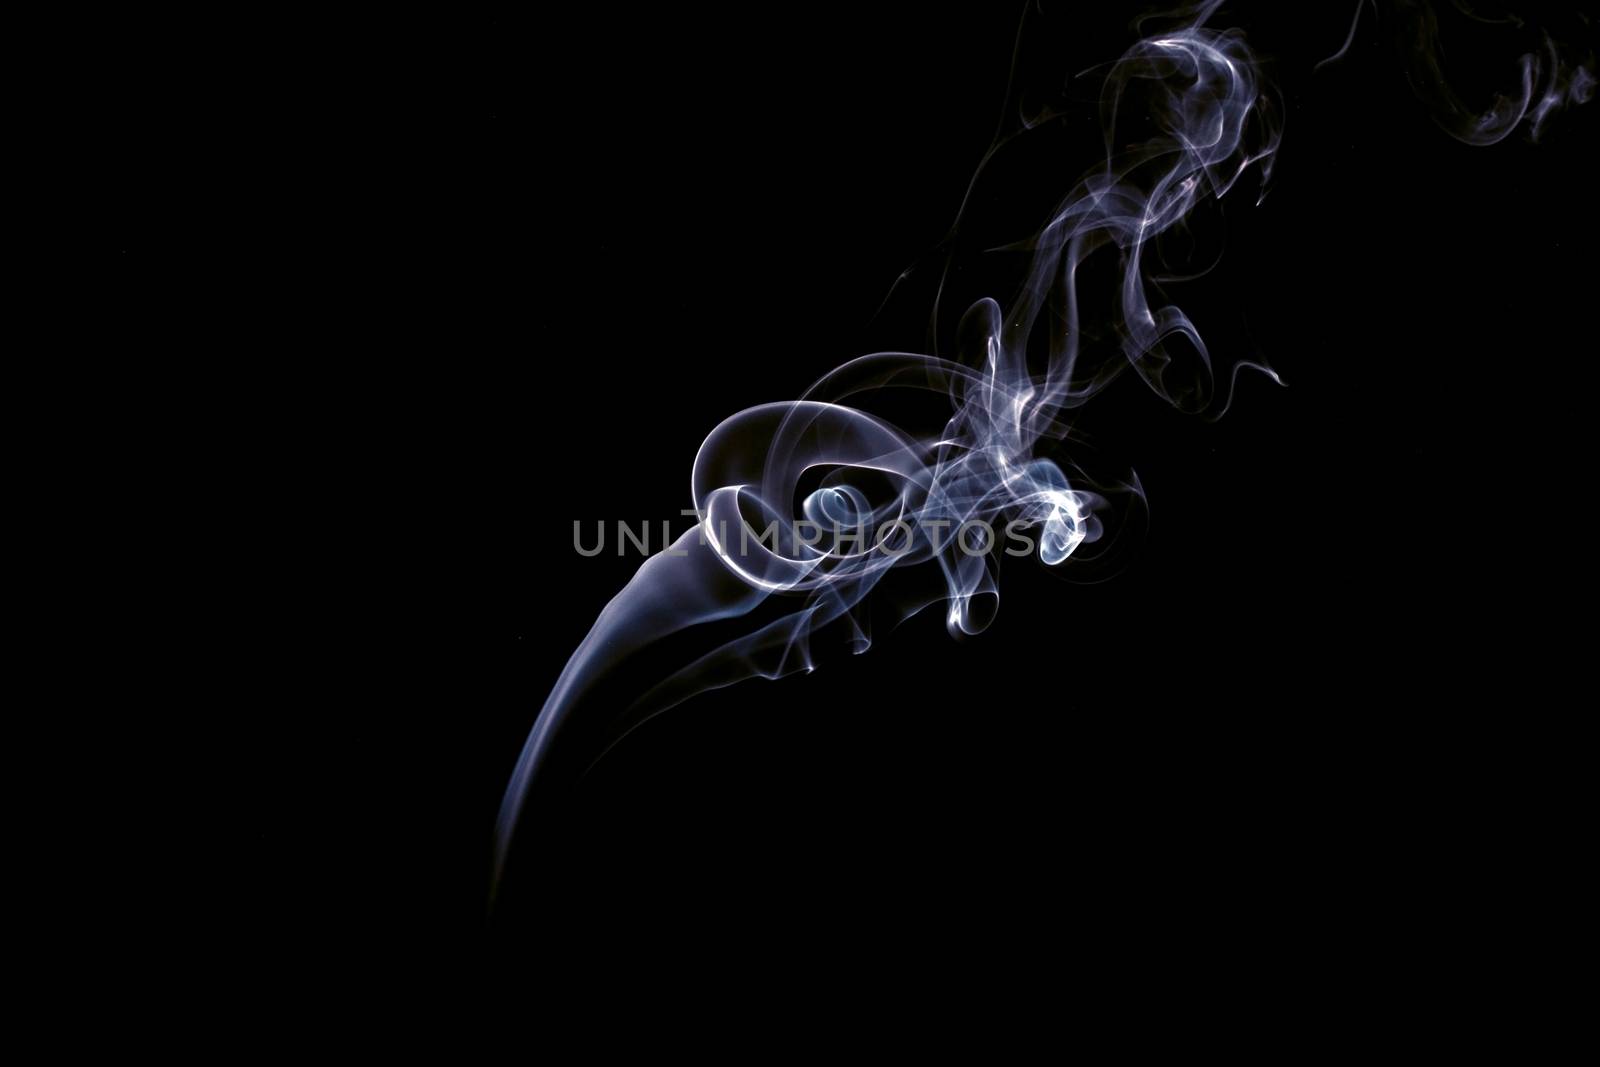 Swirls of smoke on a black background.